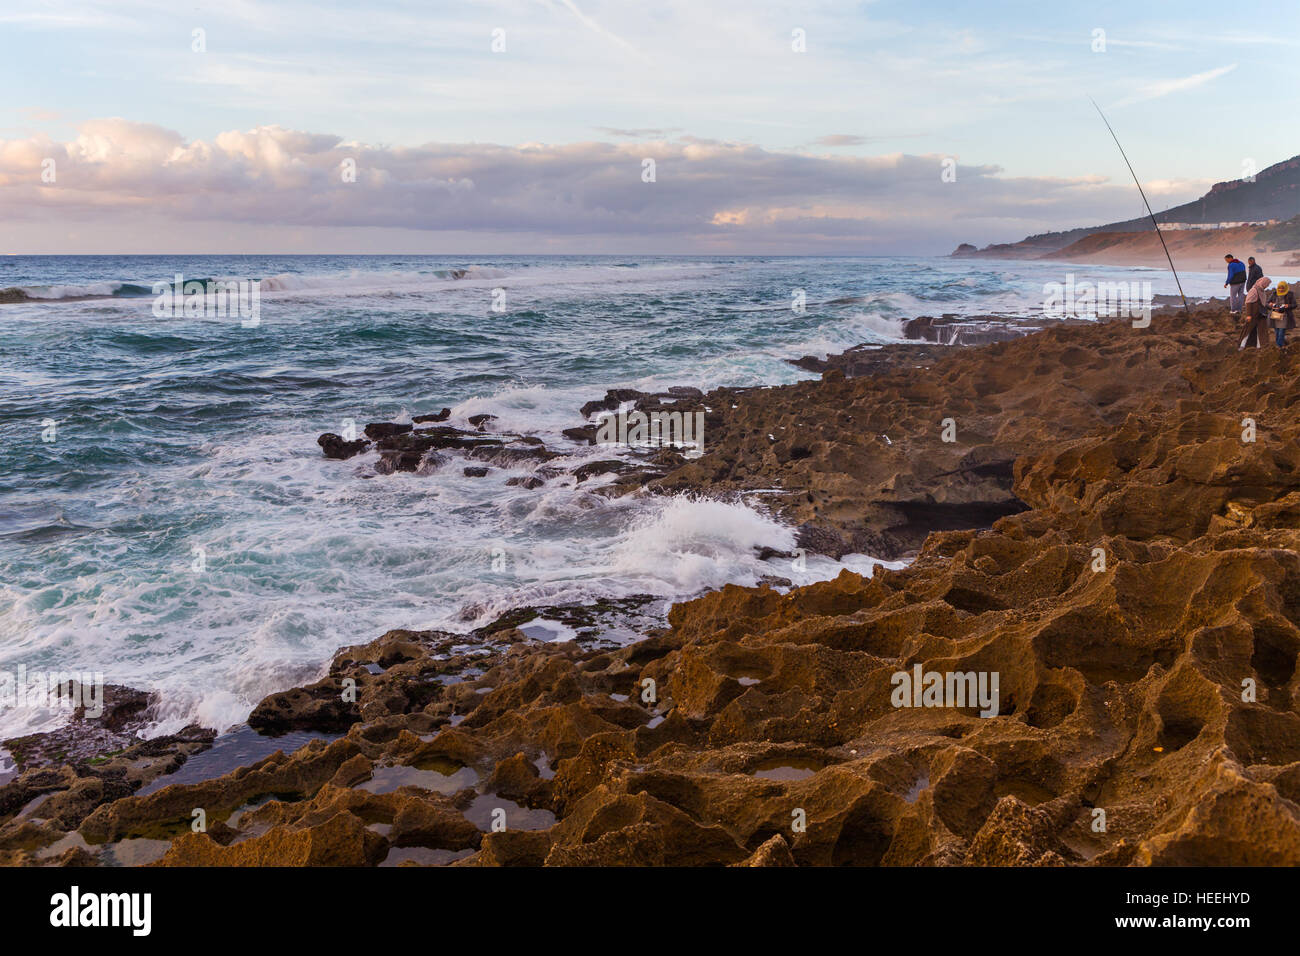 Coucher de soleil sur l'océan, l'océan Atlantique la côte, Cap Spartel près de Tanger, Maroc Banque D'Images